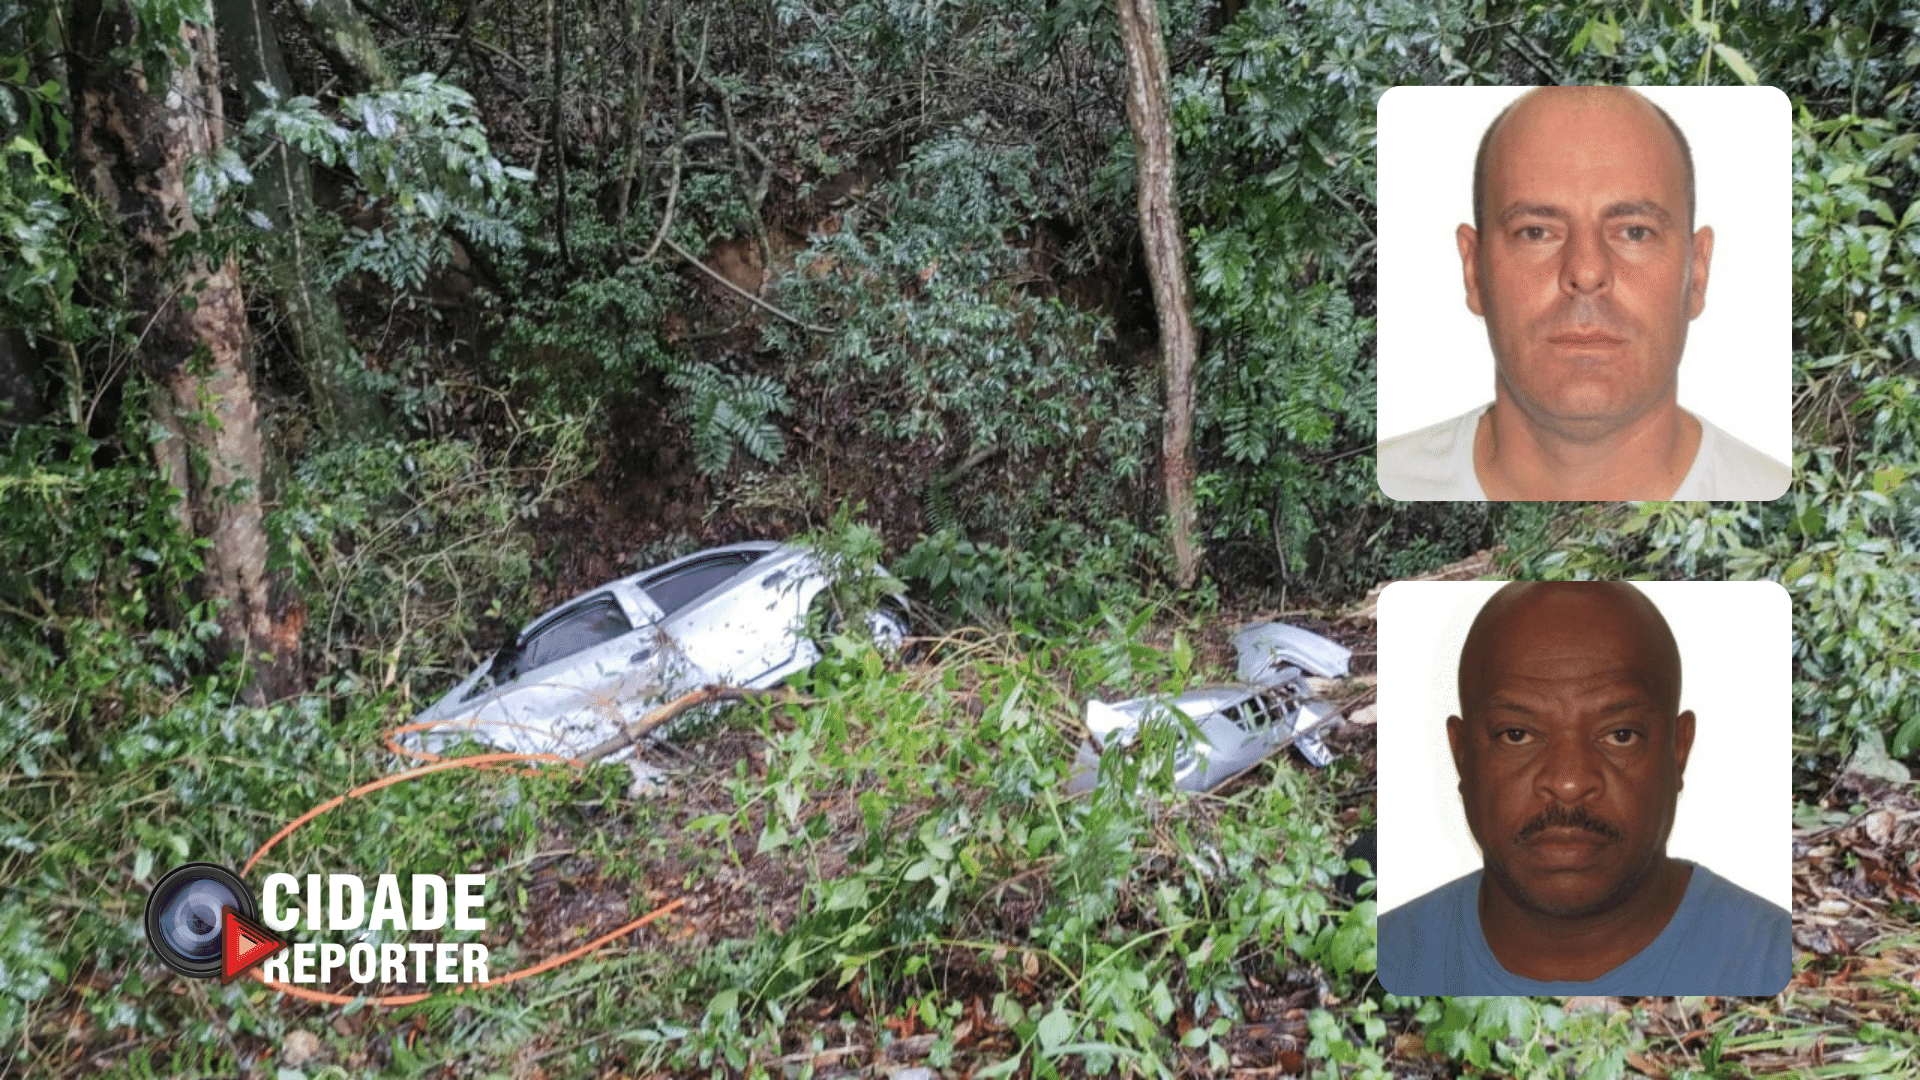 Durante as buscas, encontraram o veículo de escolta com os policiais já mortos. Eles tinham cerca de 50 anos. O carro foi alvejado com tiros de fuzil.